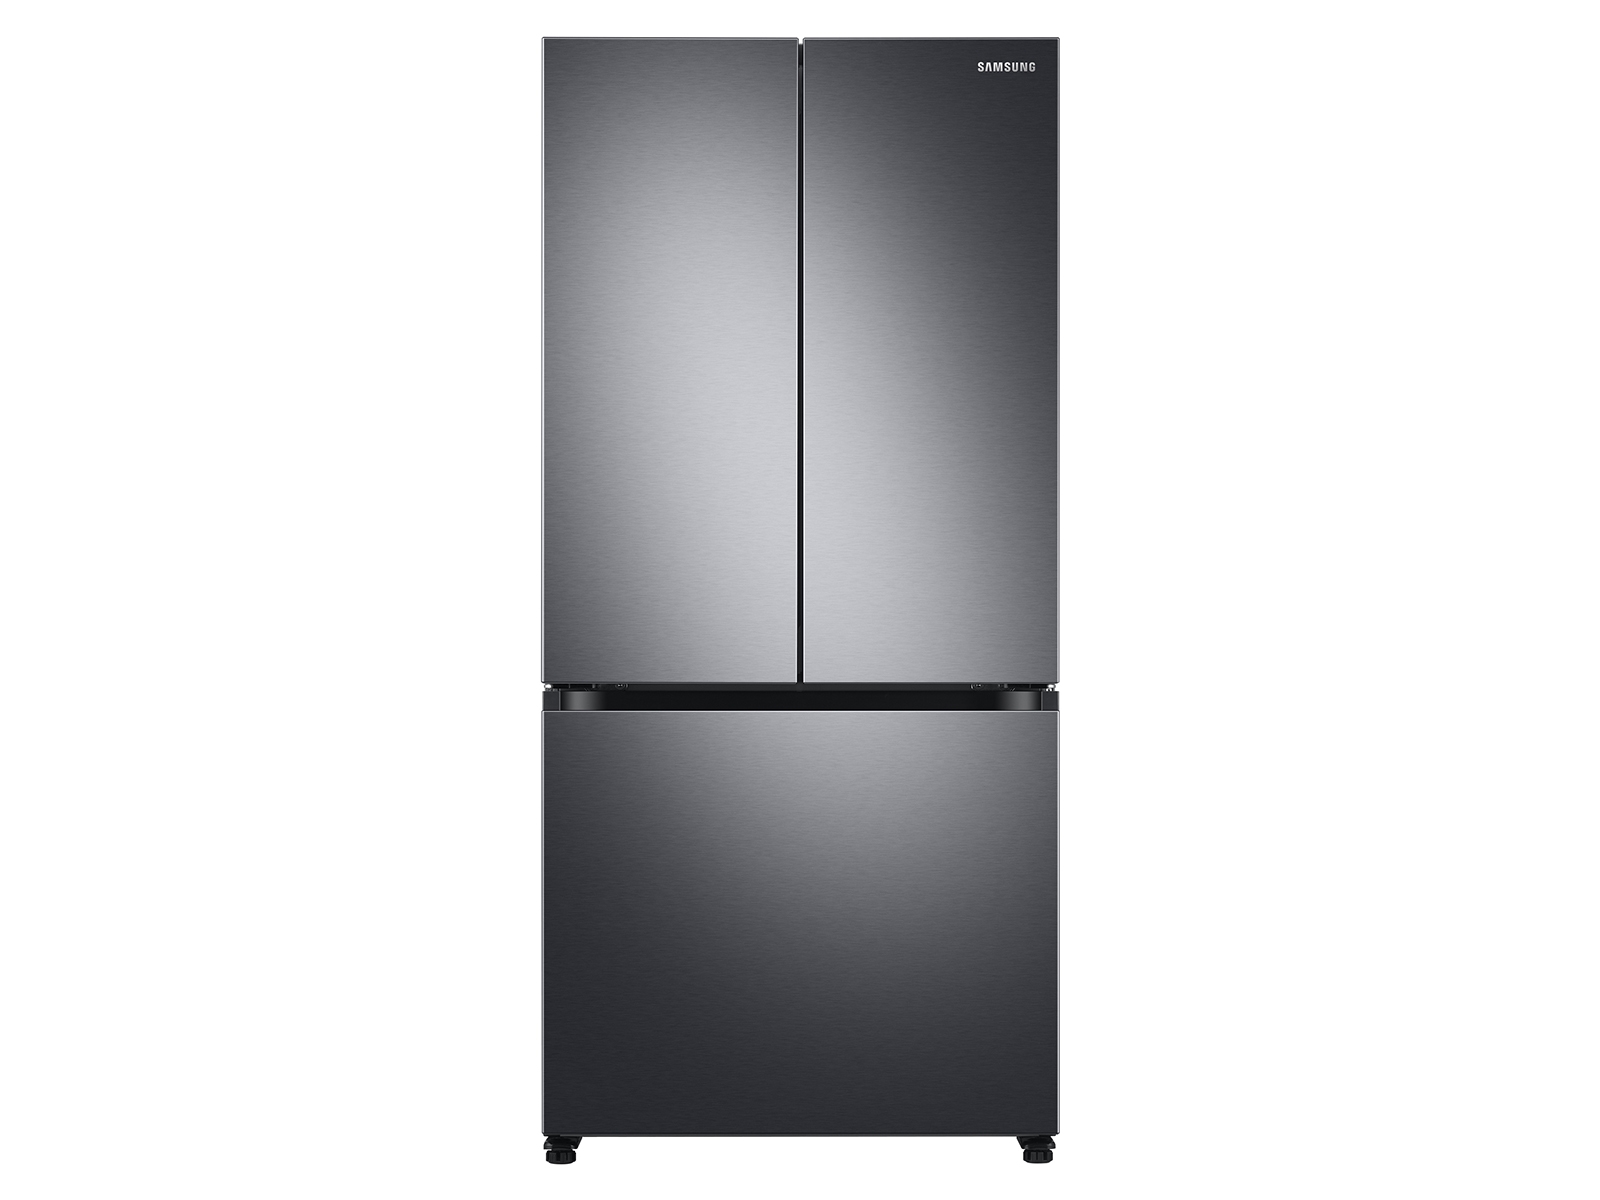 Photos - Fridge Samsung 19.5 cu. ft. Smart 3-Door French Door Refrigerator in Black Stainl 